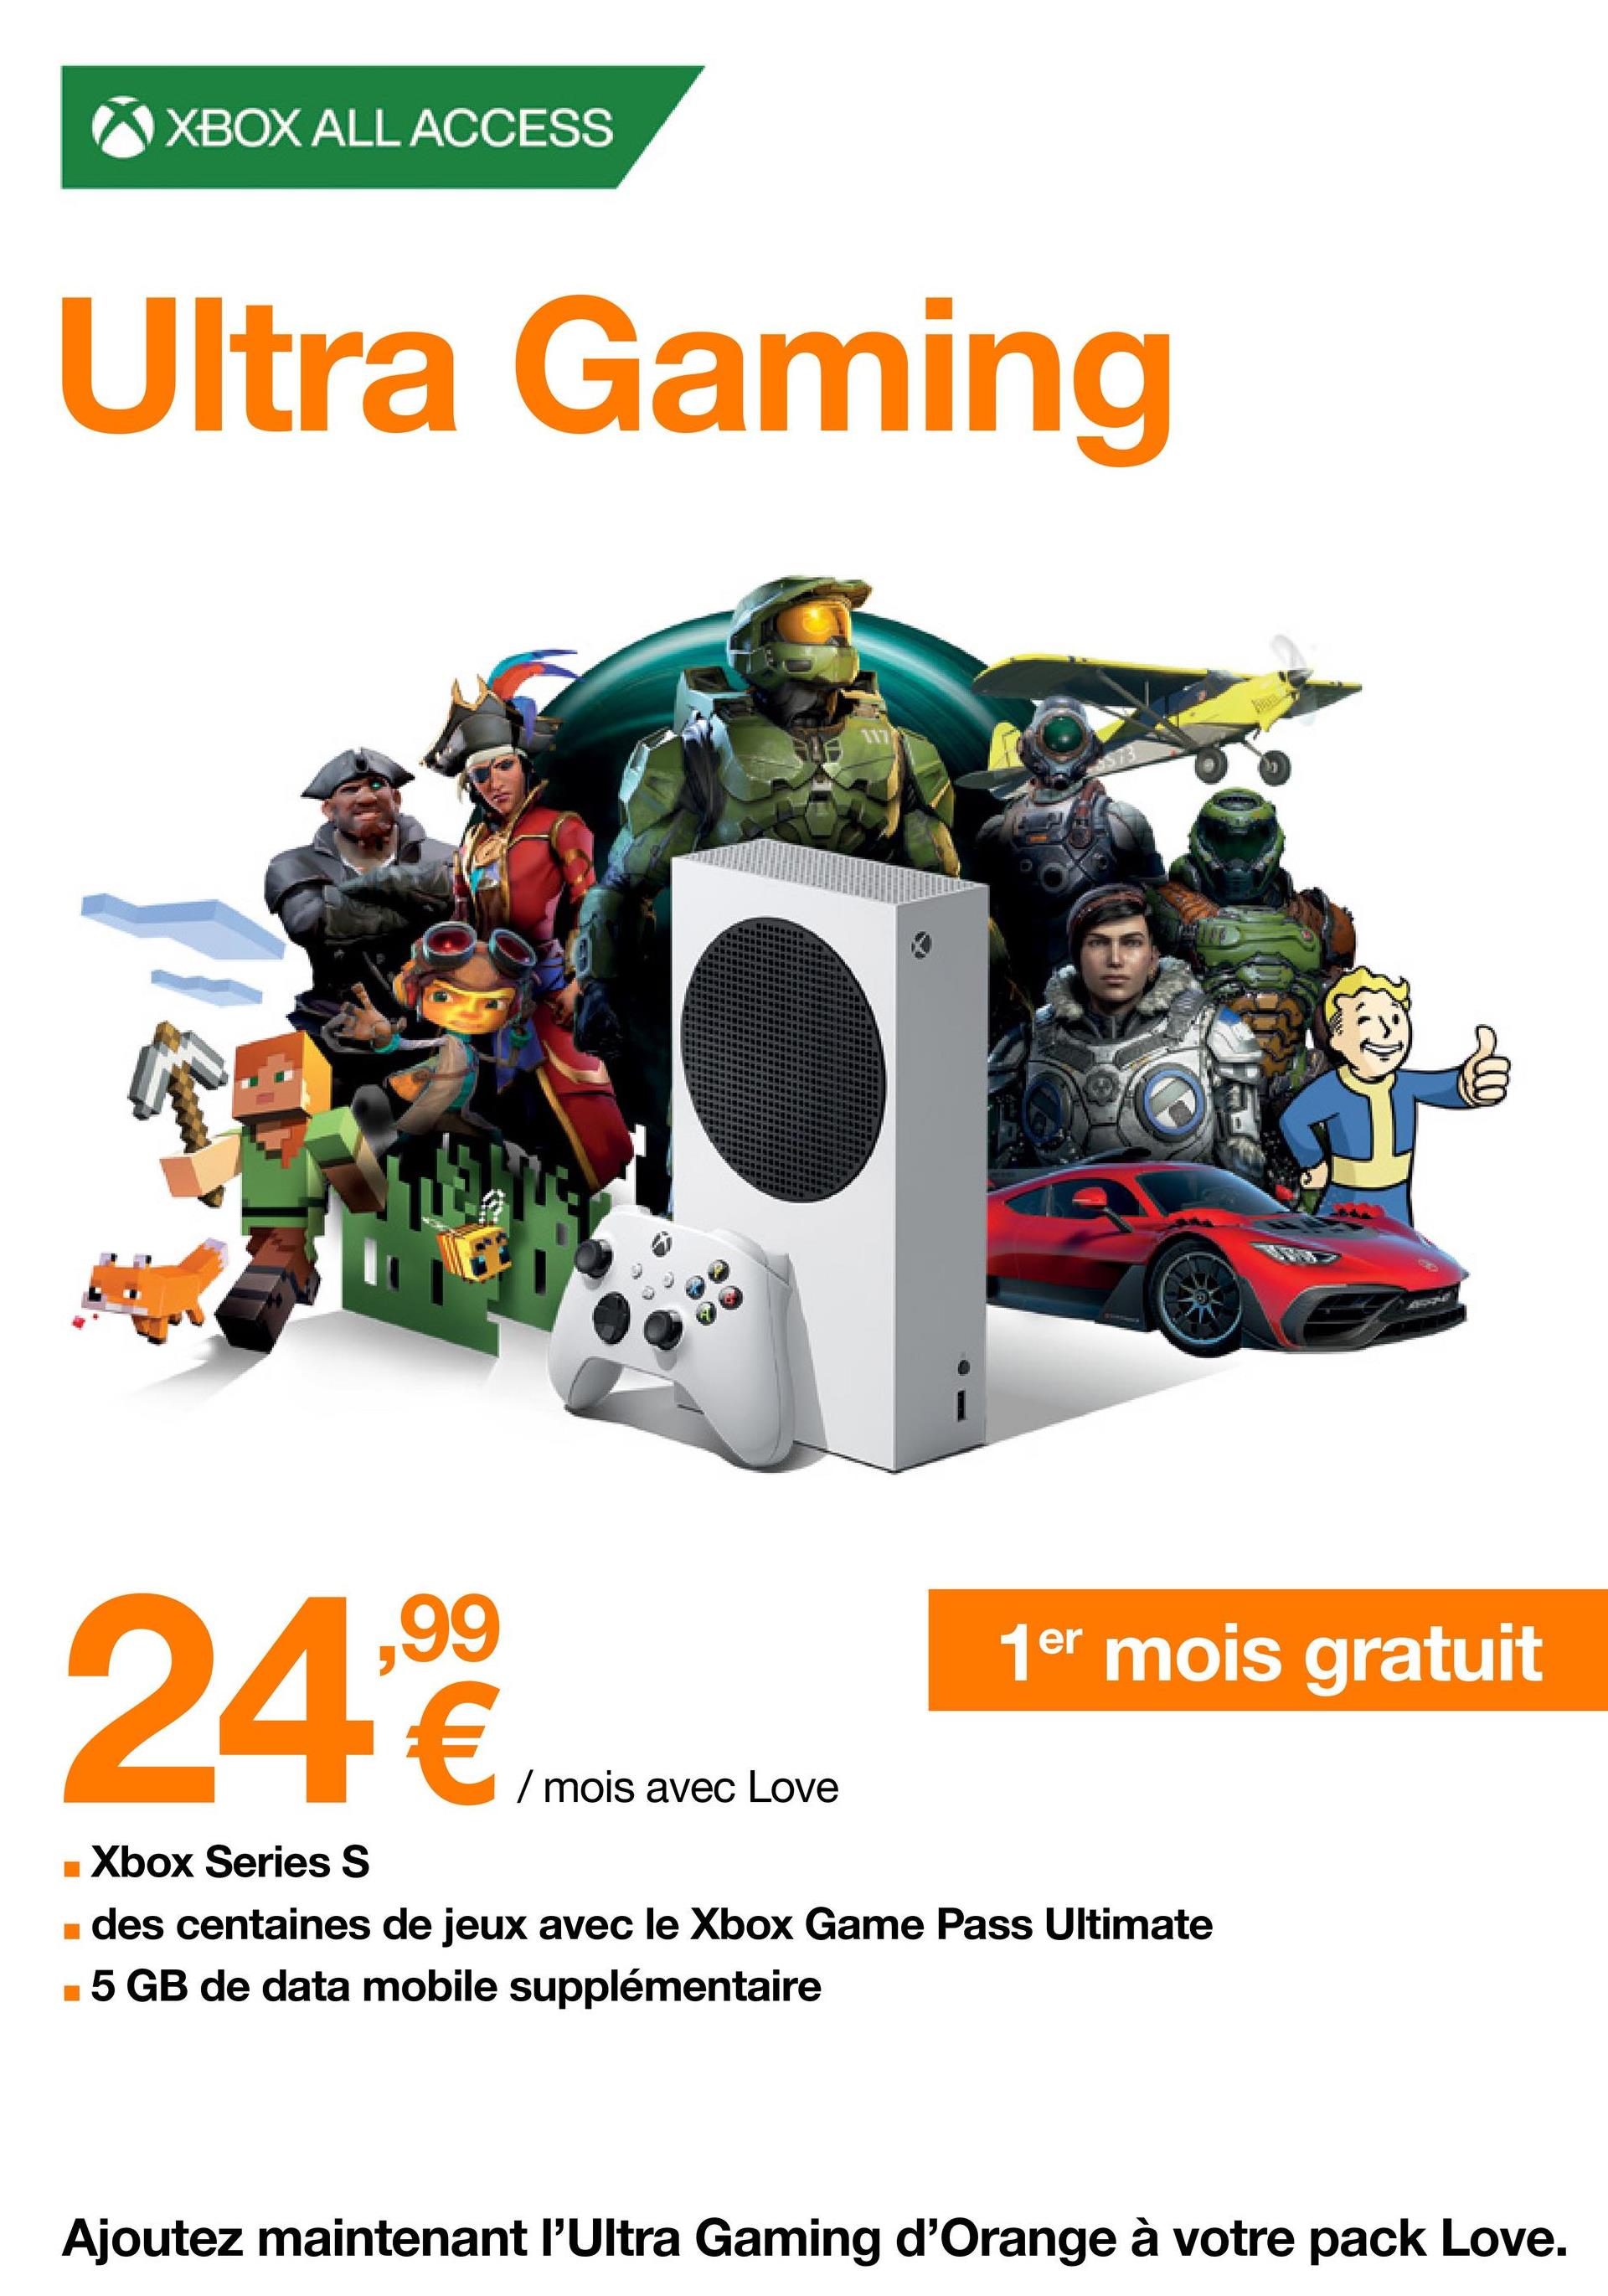 XBOX ALL ACCESS
Ultra Gaming
ALA
117
24,99€
■ Xbox Series S
■ des centaines de jeux avec le Xbox Game Pass Ultimate
■5 GB de data mobile supplémentaire
/ mois avec Love
1er mois gratuit
Ajoutez maintenant l'Ultra Gaming d'Orange à votre pack Love.